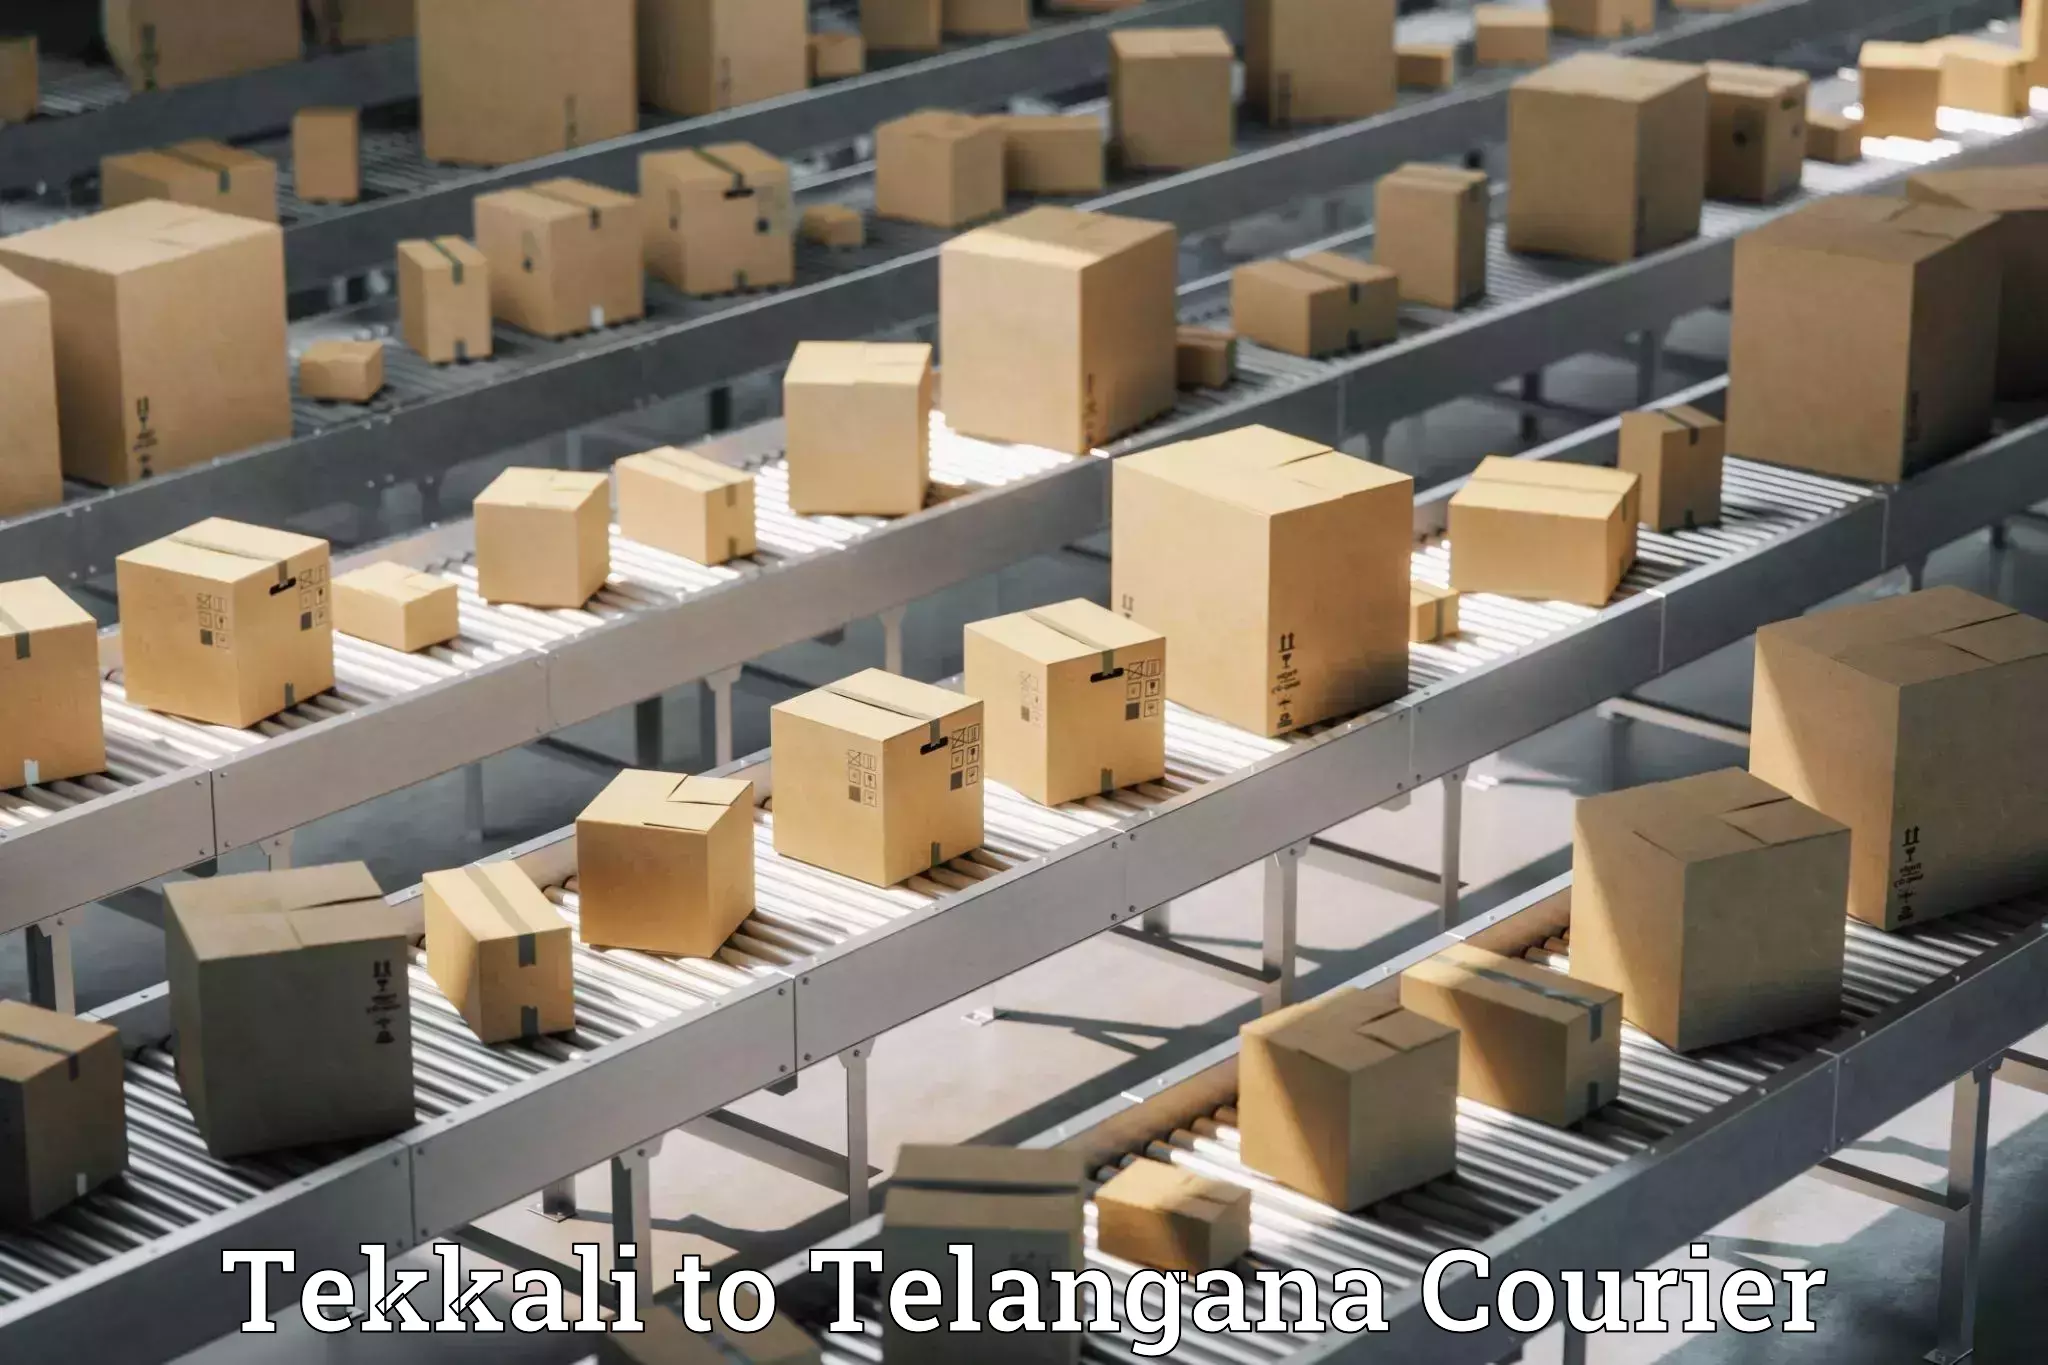 Urgent luggage shipment Tekkali to Telangana